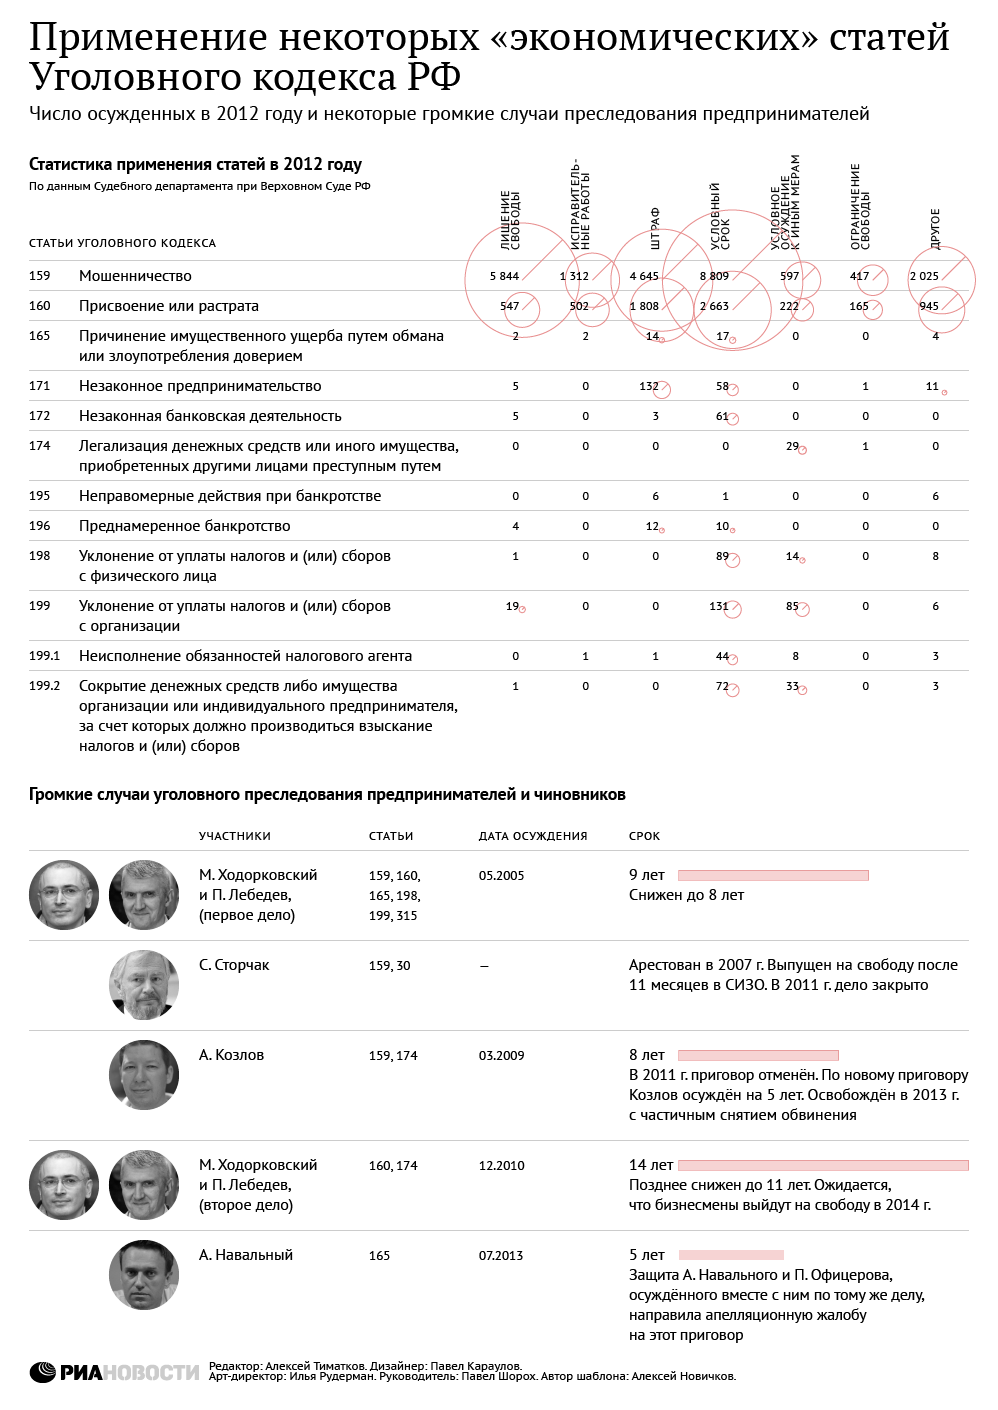 Применение некоторых экономических статей Уголовного кодекса РФ